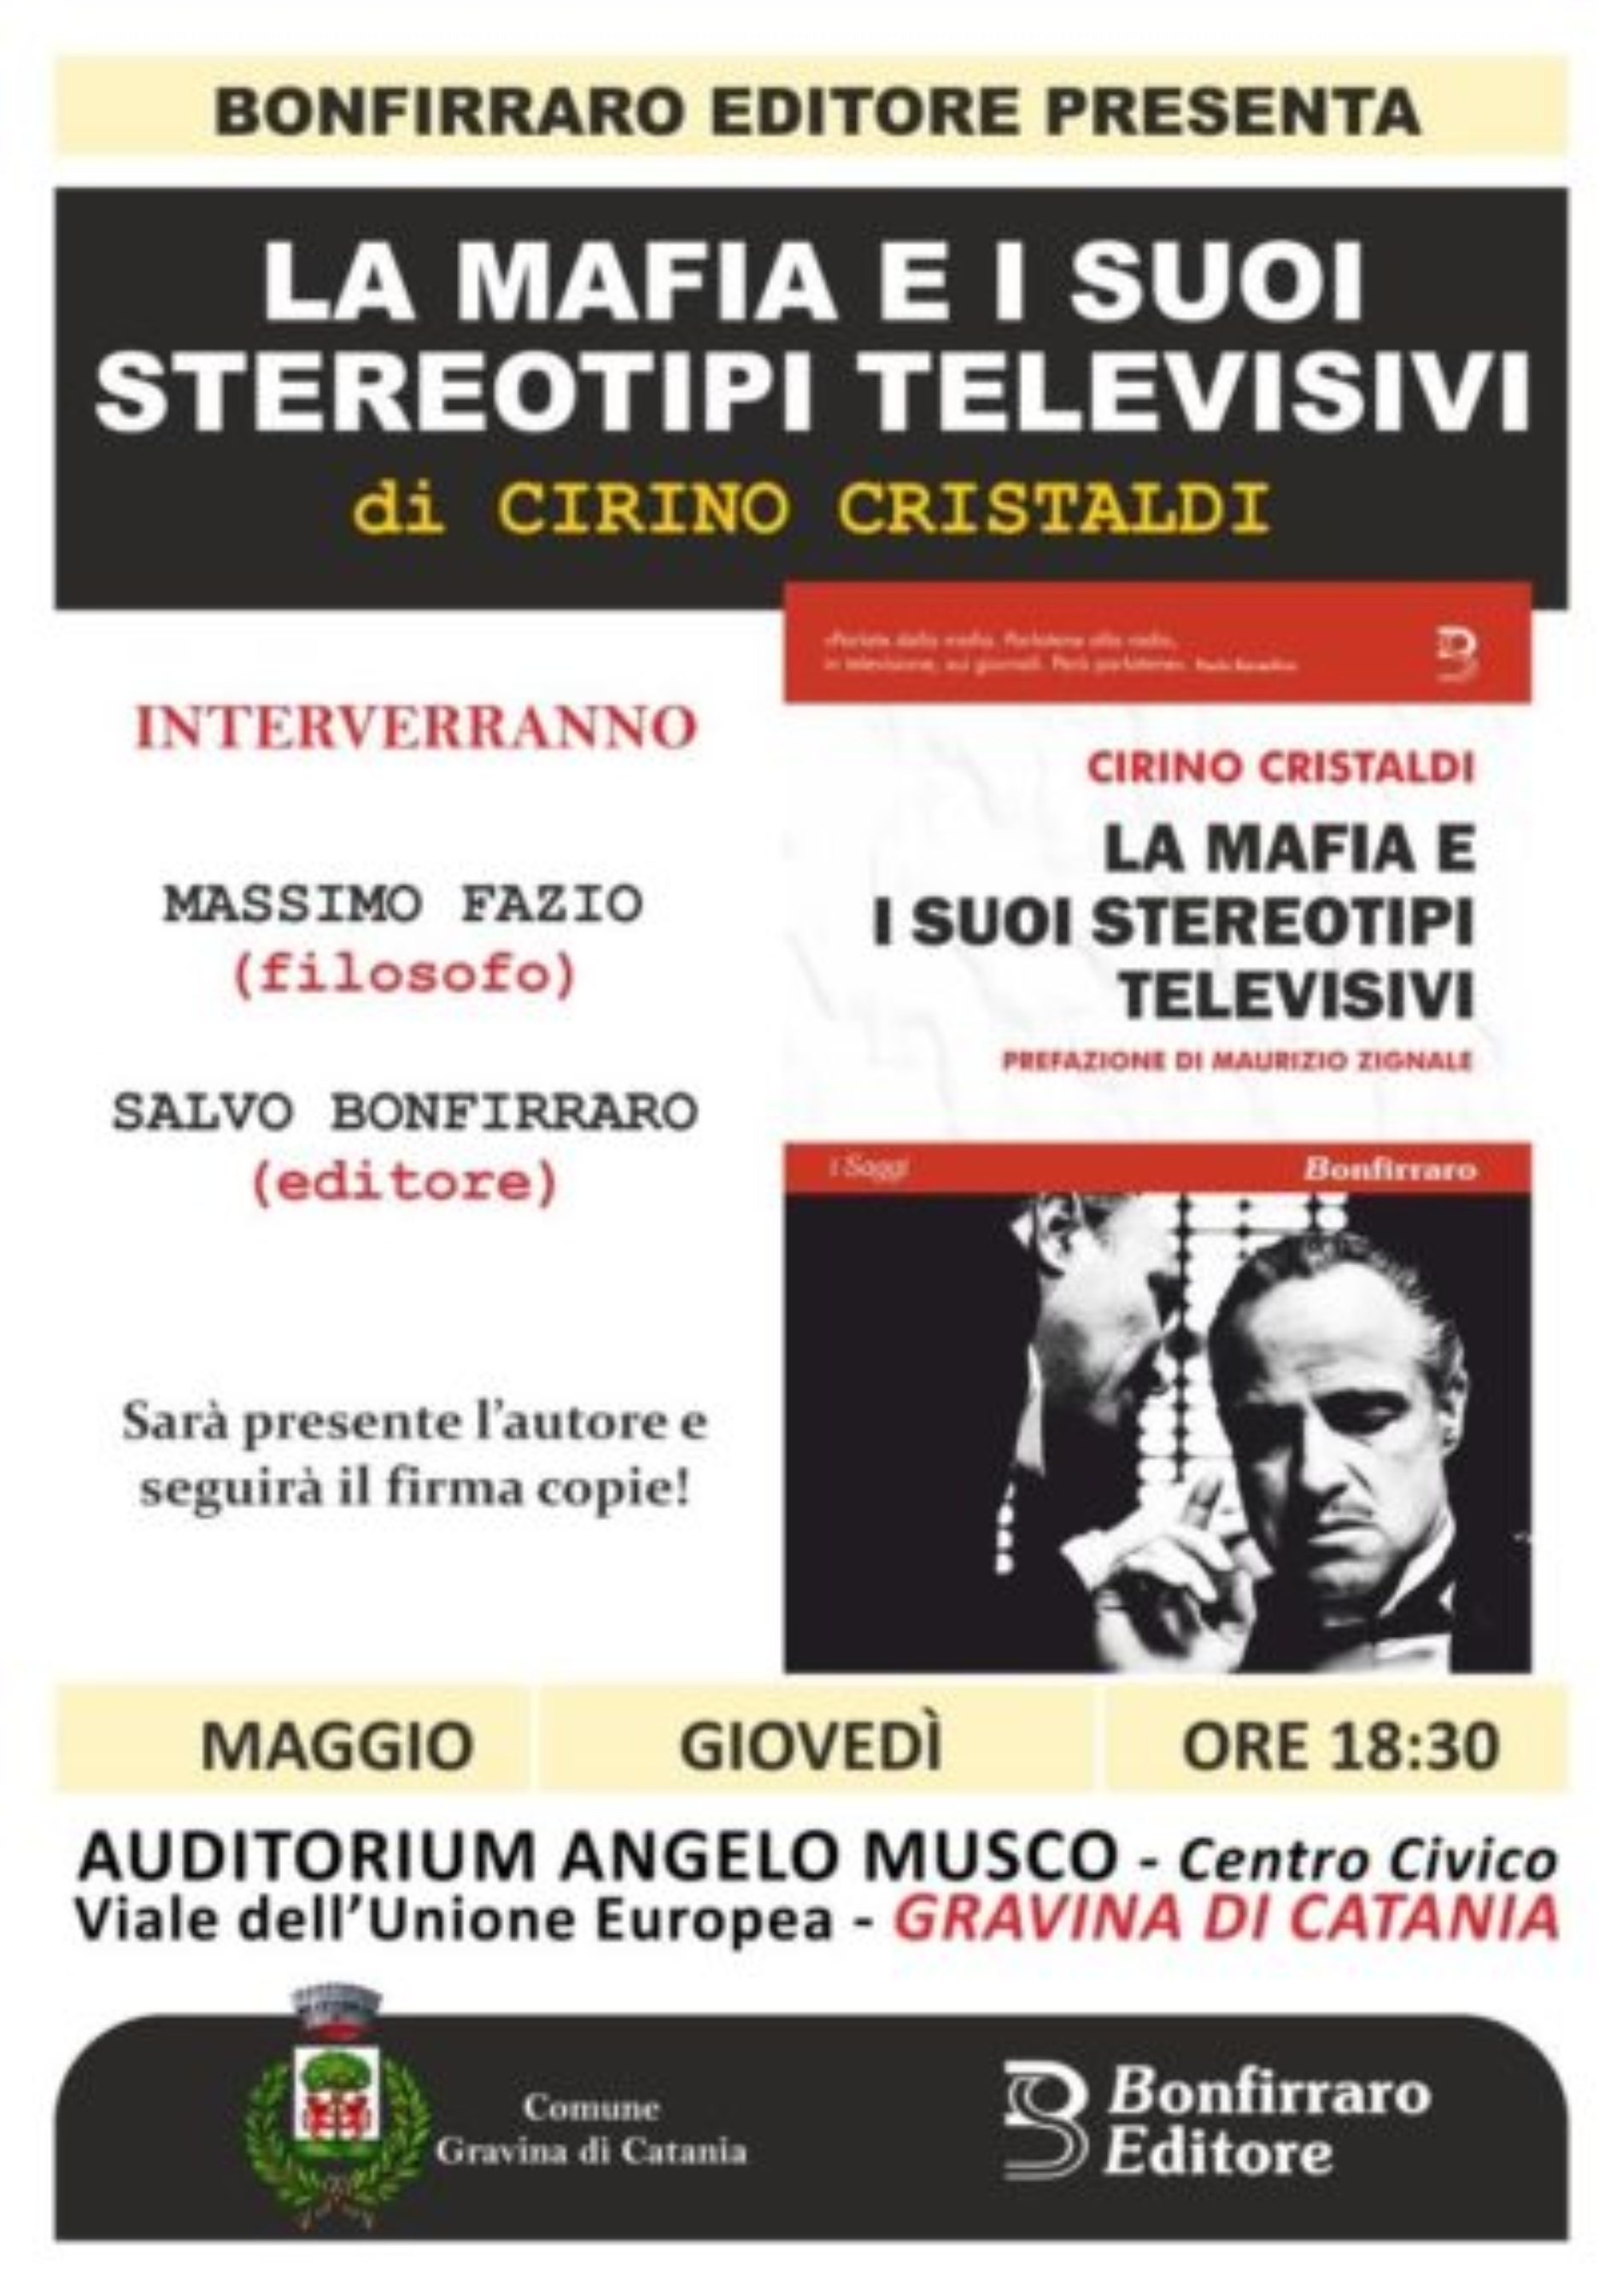 L’intervista al giornalista Cirino Cristaldi che presenterà per la prima volta il libro “La Mafia e i suoi stereotipi televisivi” a Gravina di Catania